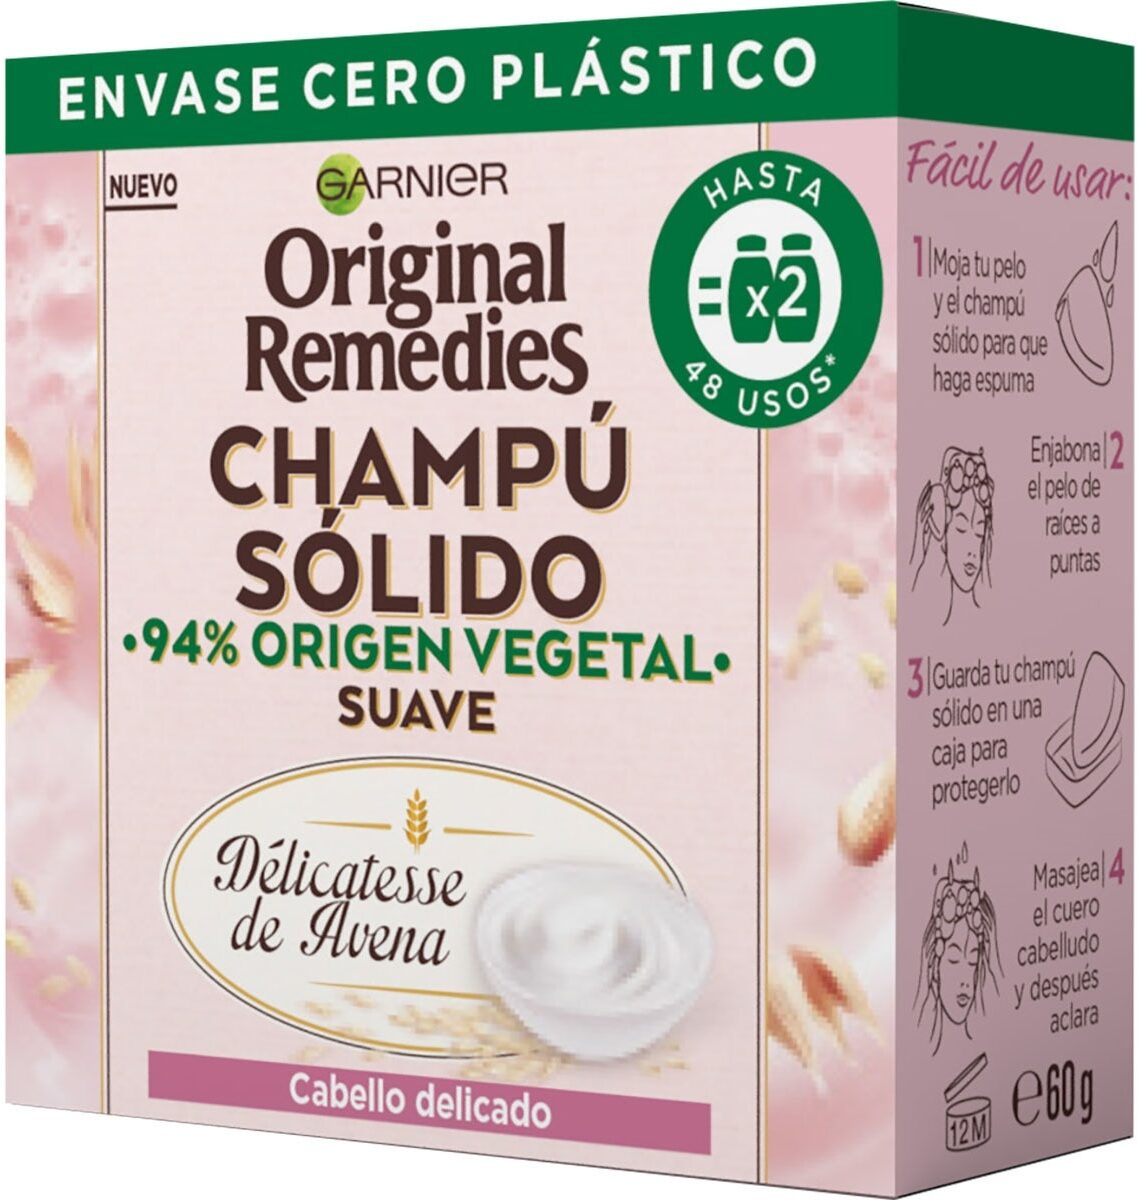 Original remedies champú solido avena - מוצר - en